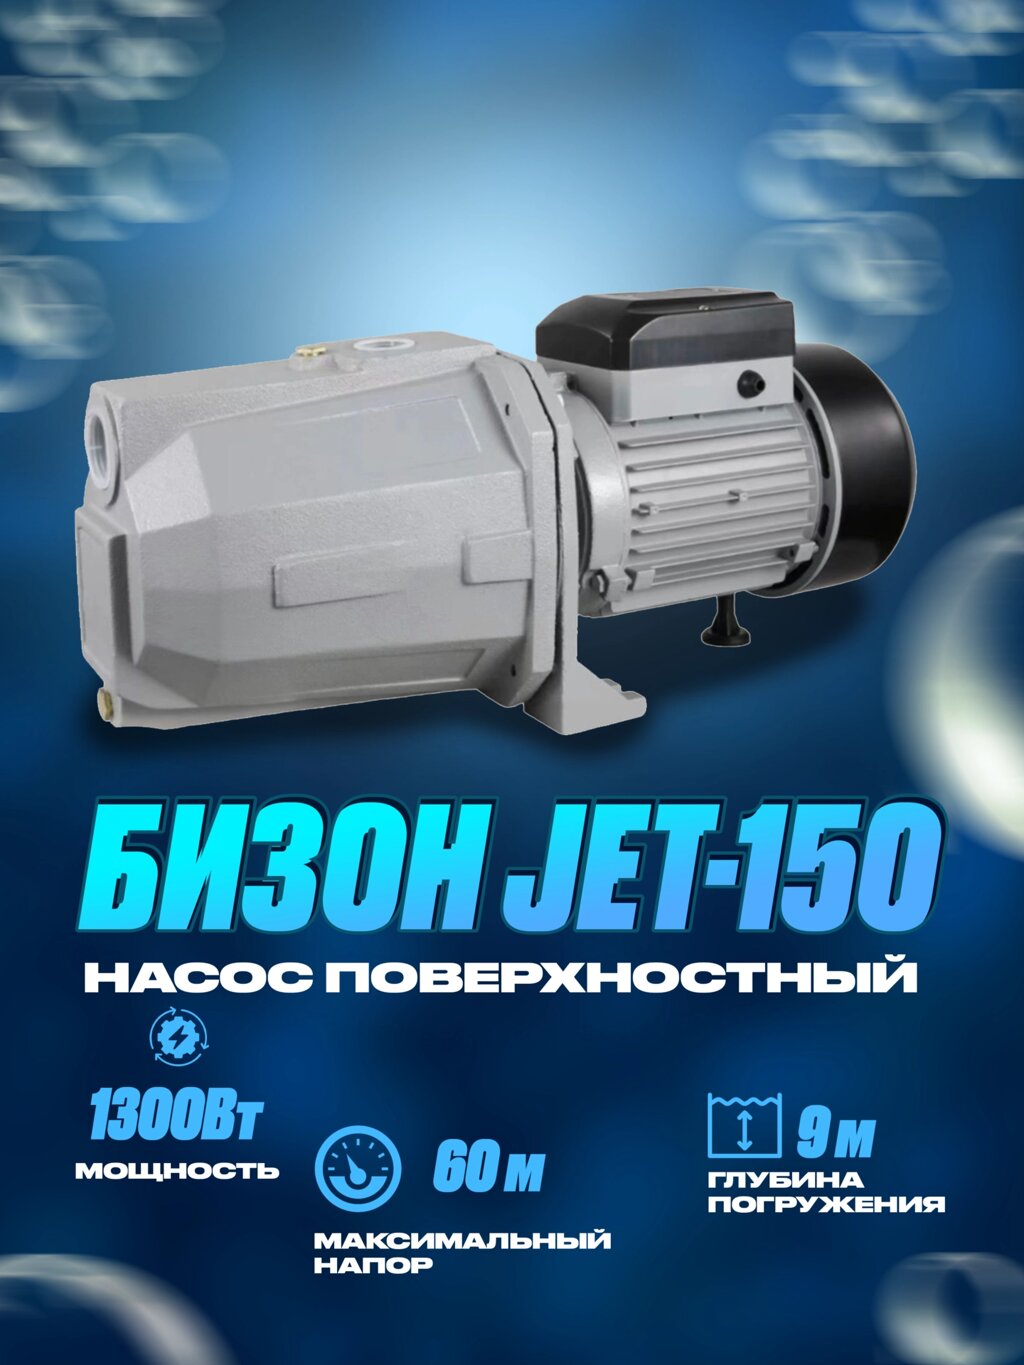 Насос Поверхностный Бизон Jet 150 - преимущества